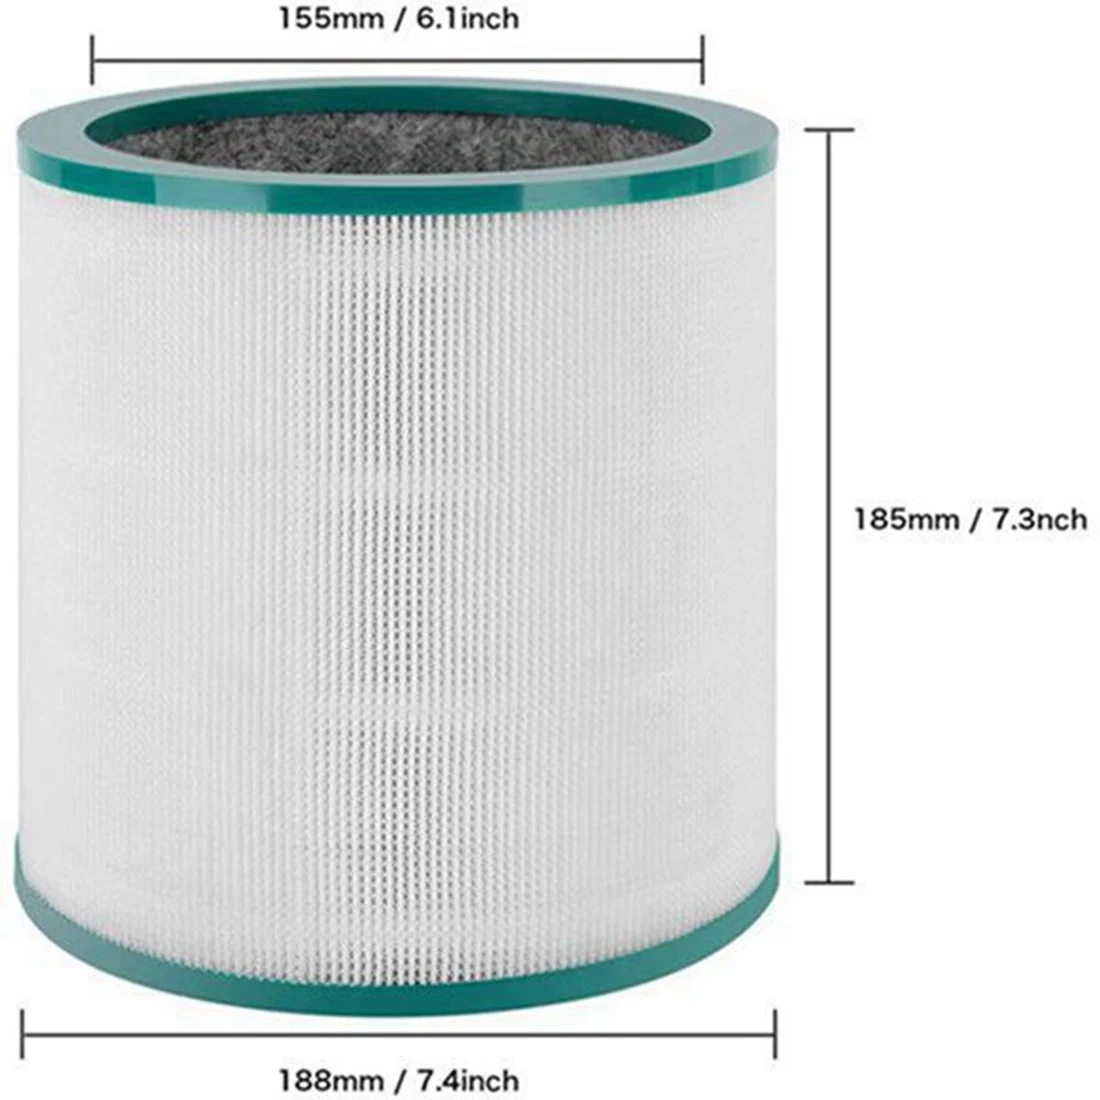 Замена фильтра воздухоочистителя Совместима для Dyson Tower Pure Hot Cool Link TP01, TP02, TP03, AT11, BP01, часть 968126-03 1